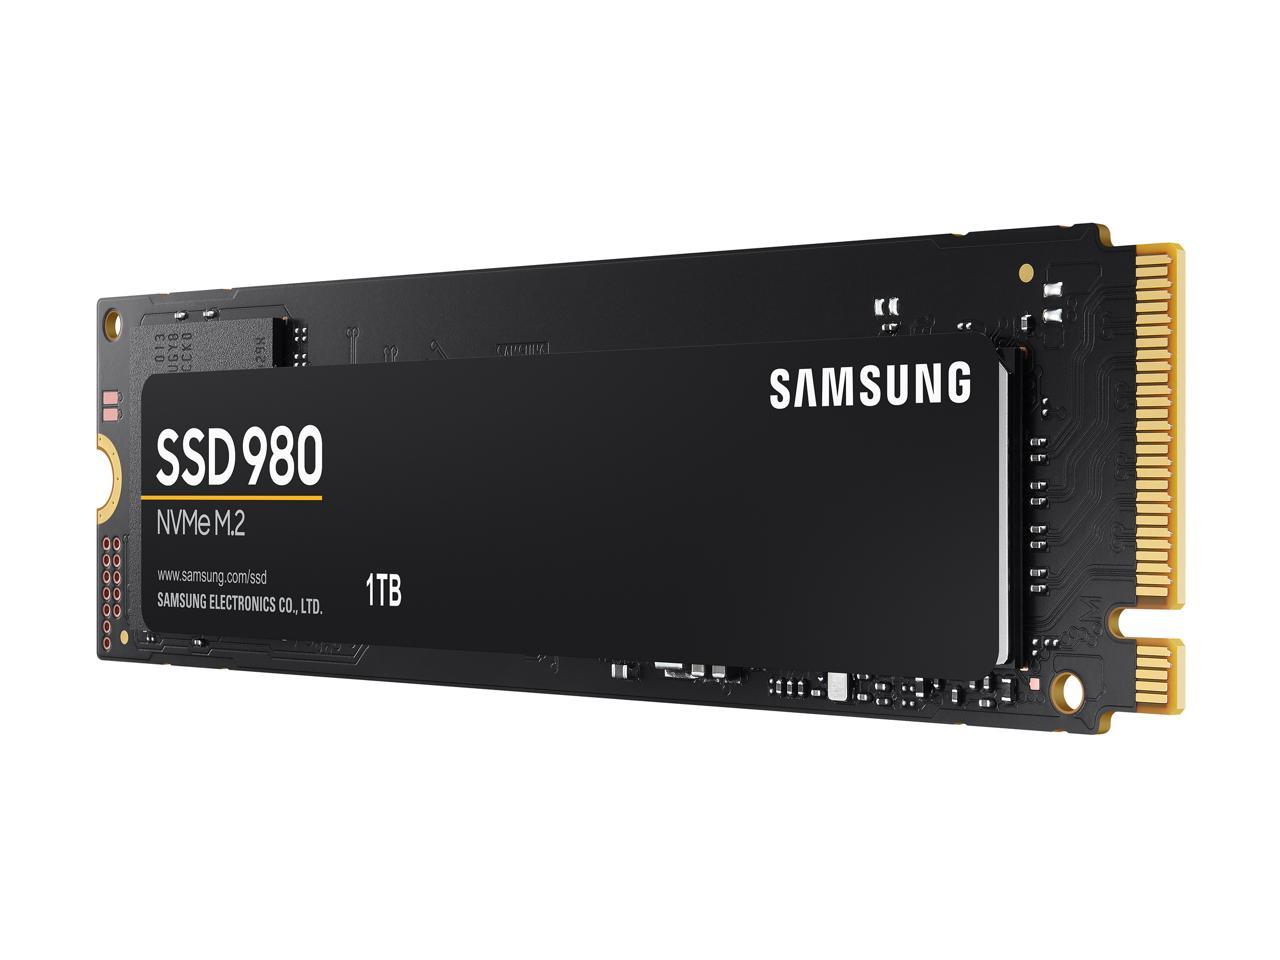 SAMSUNG 980 M.2 2280 1TB PCI-Express 3.0 x4, NVMe 1.4 V-NAND MLC Internal  Solid State Drive (SSD) MZ-V8V1T0B/AM